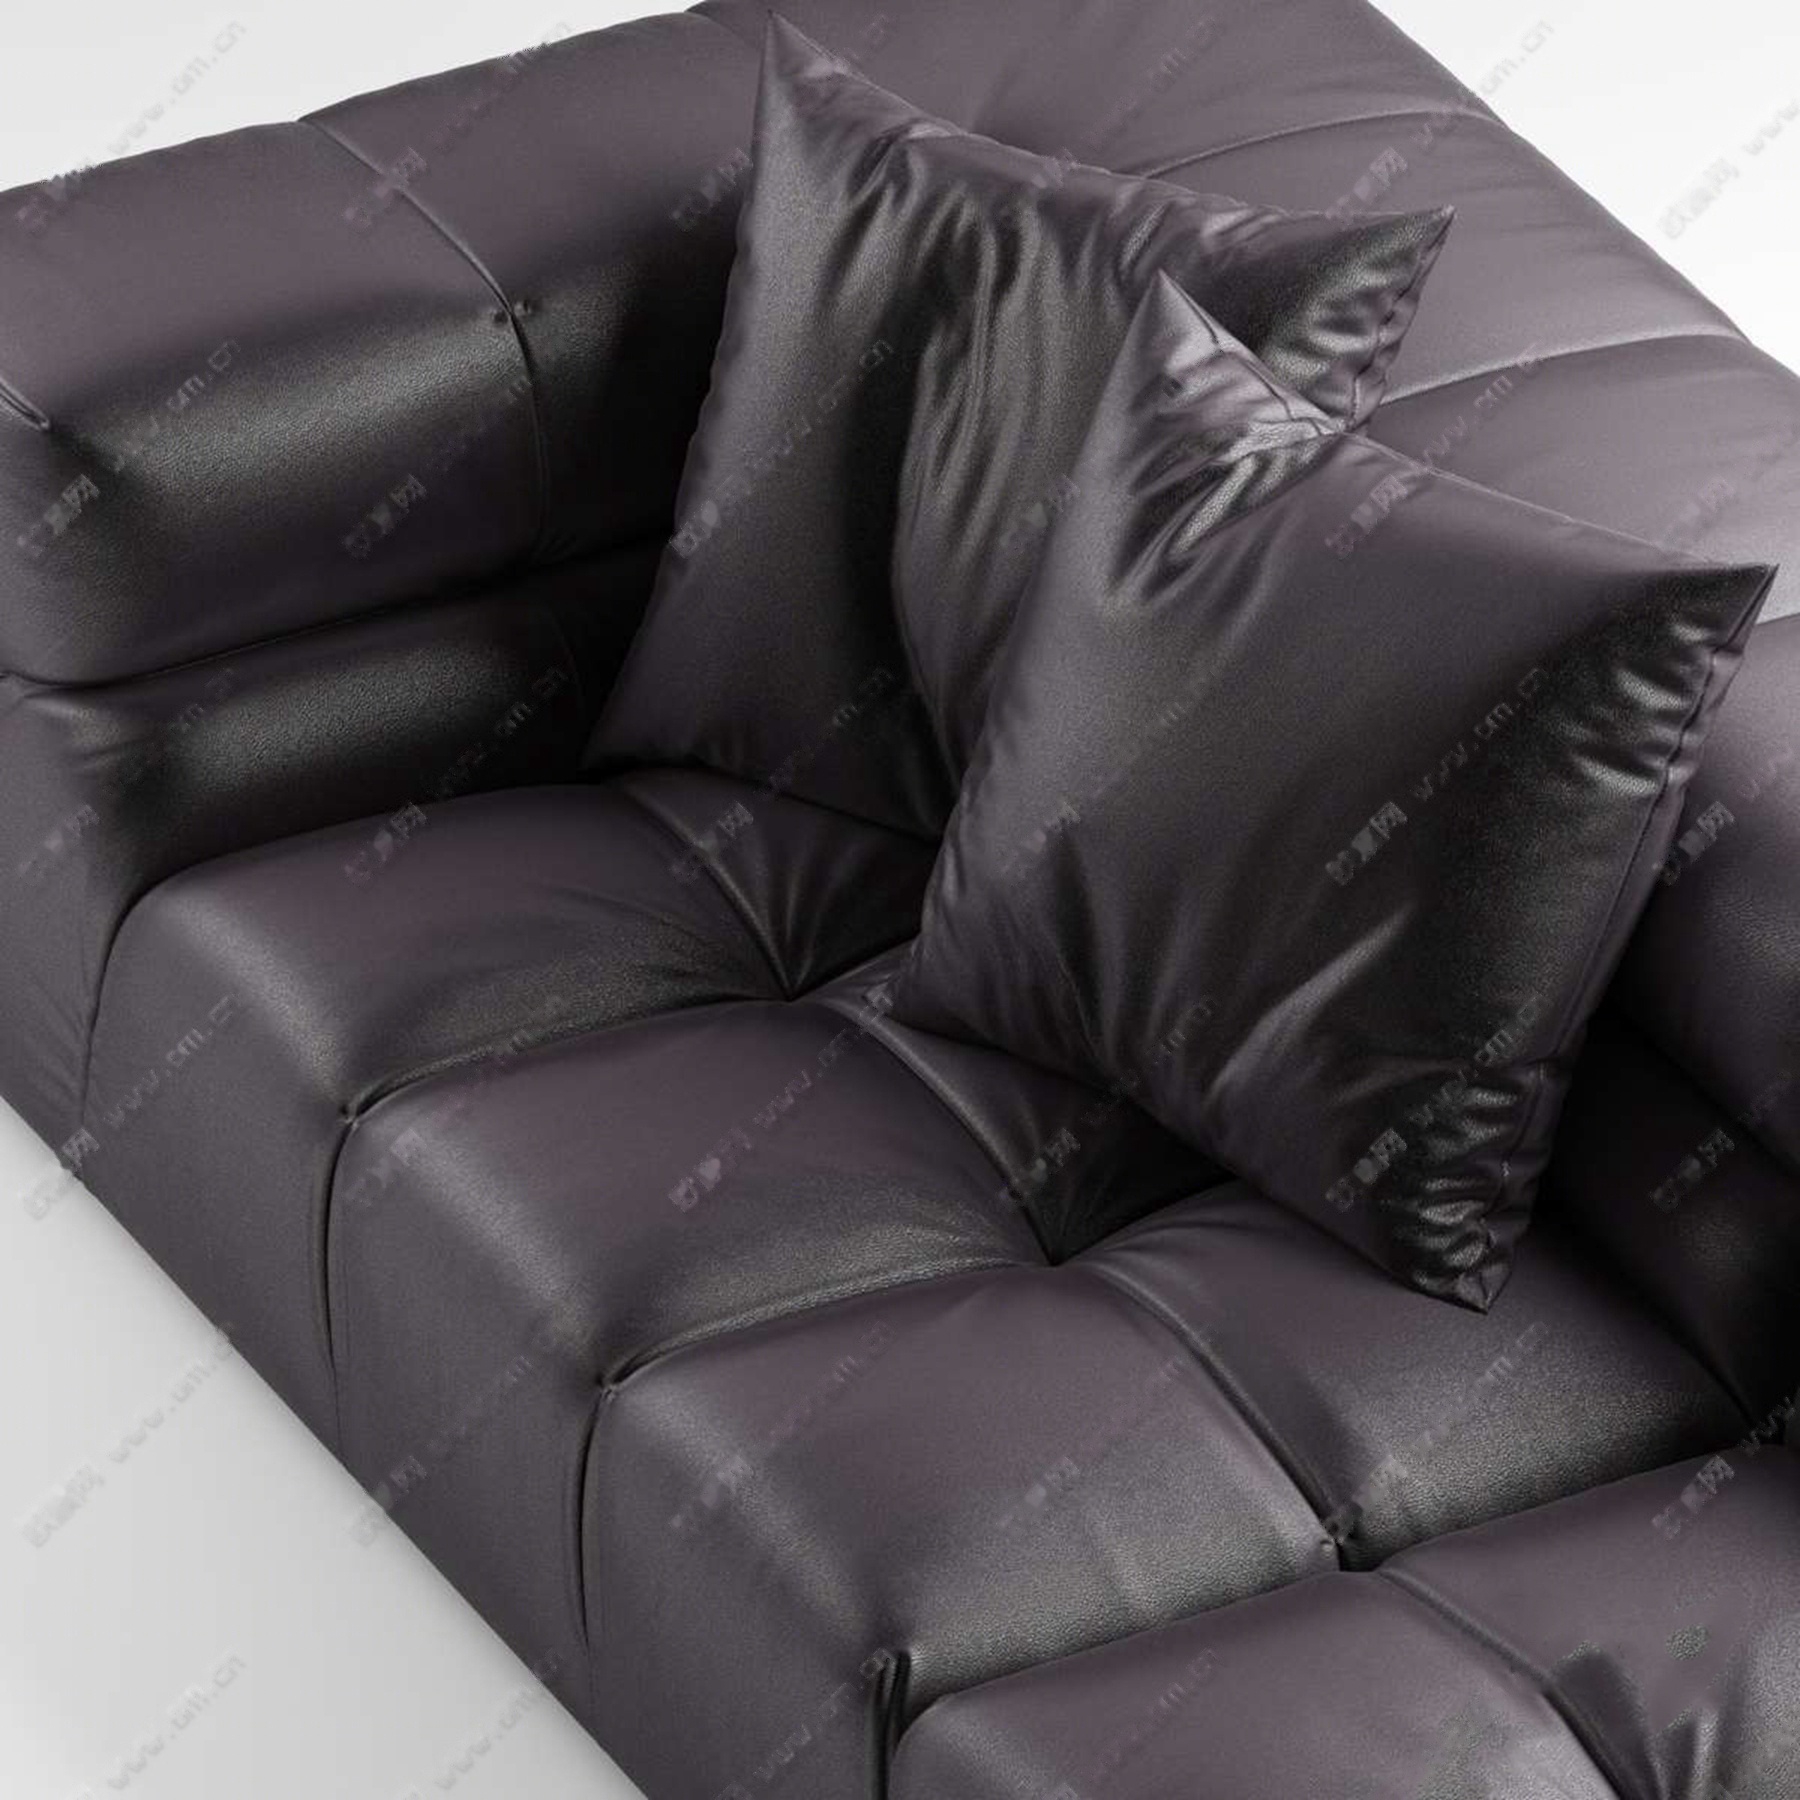 现代皮革布艺转角沙发沙发凳组合3d模型下载【id:920638919】